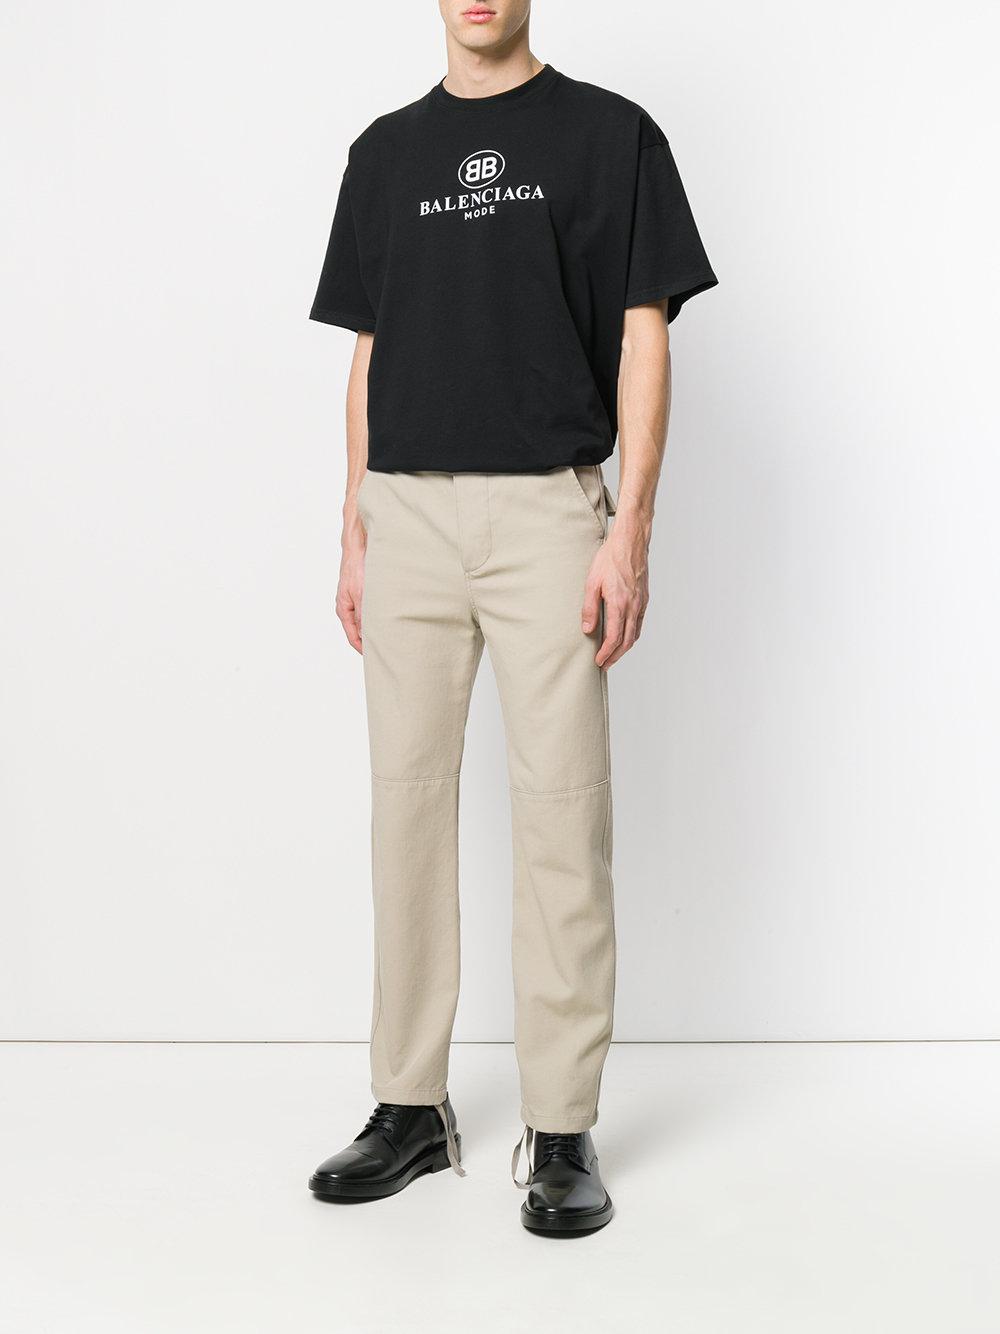 Camiseta con logo Balenciaga de Algodón de color Negro para hombre | Lyst